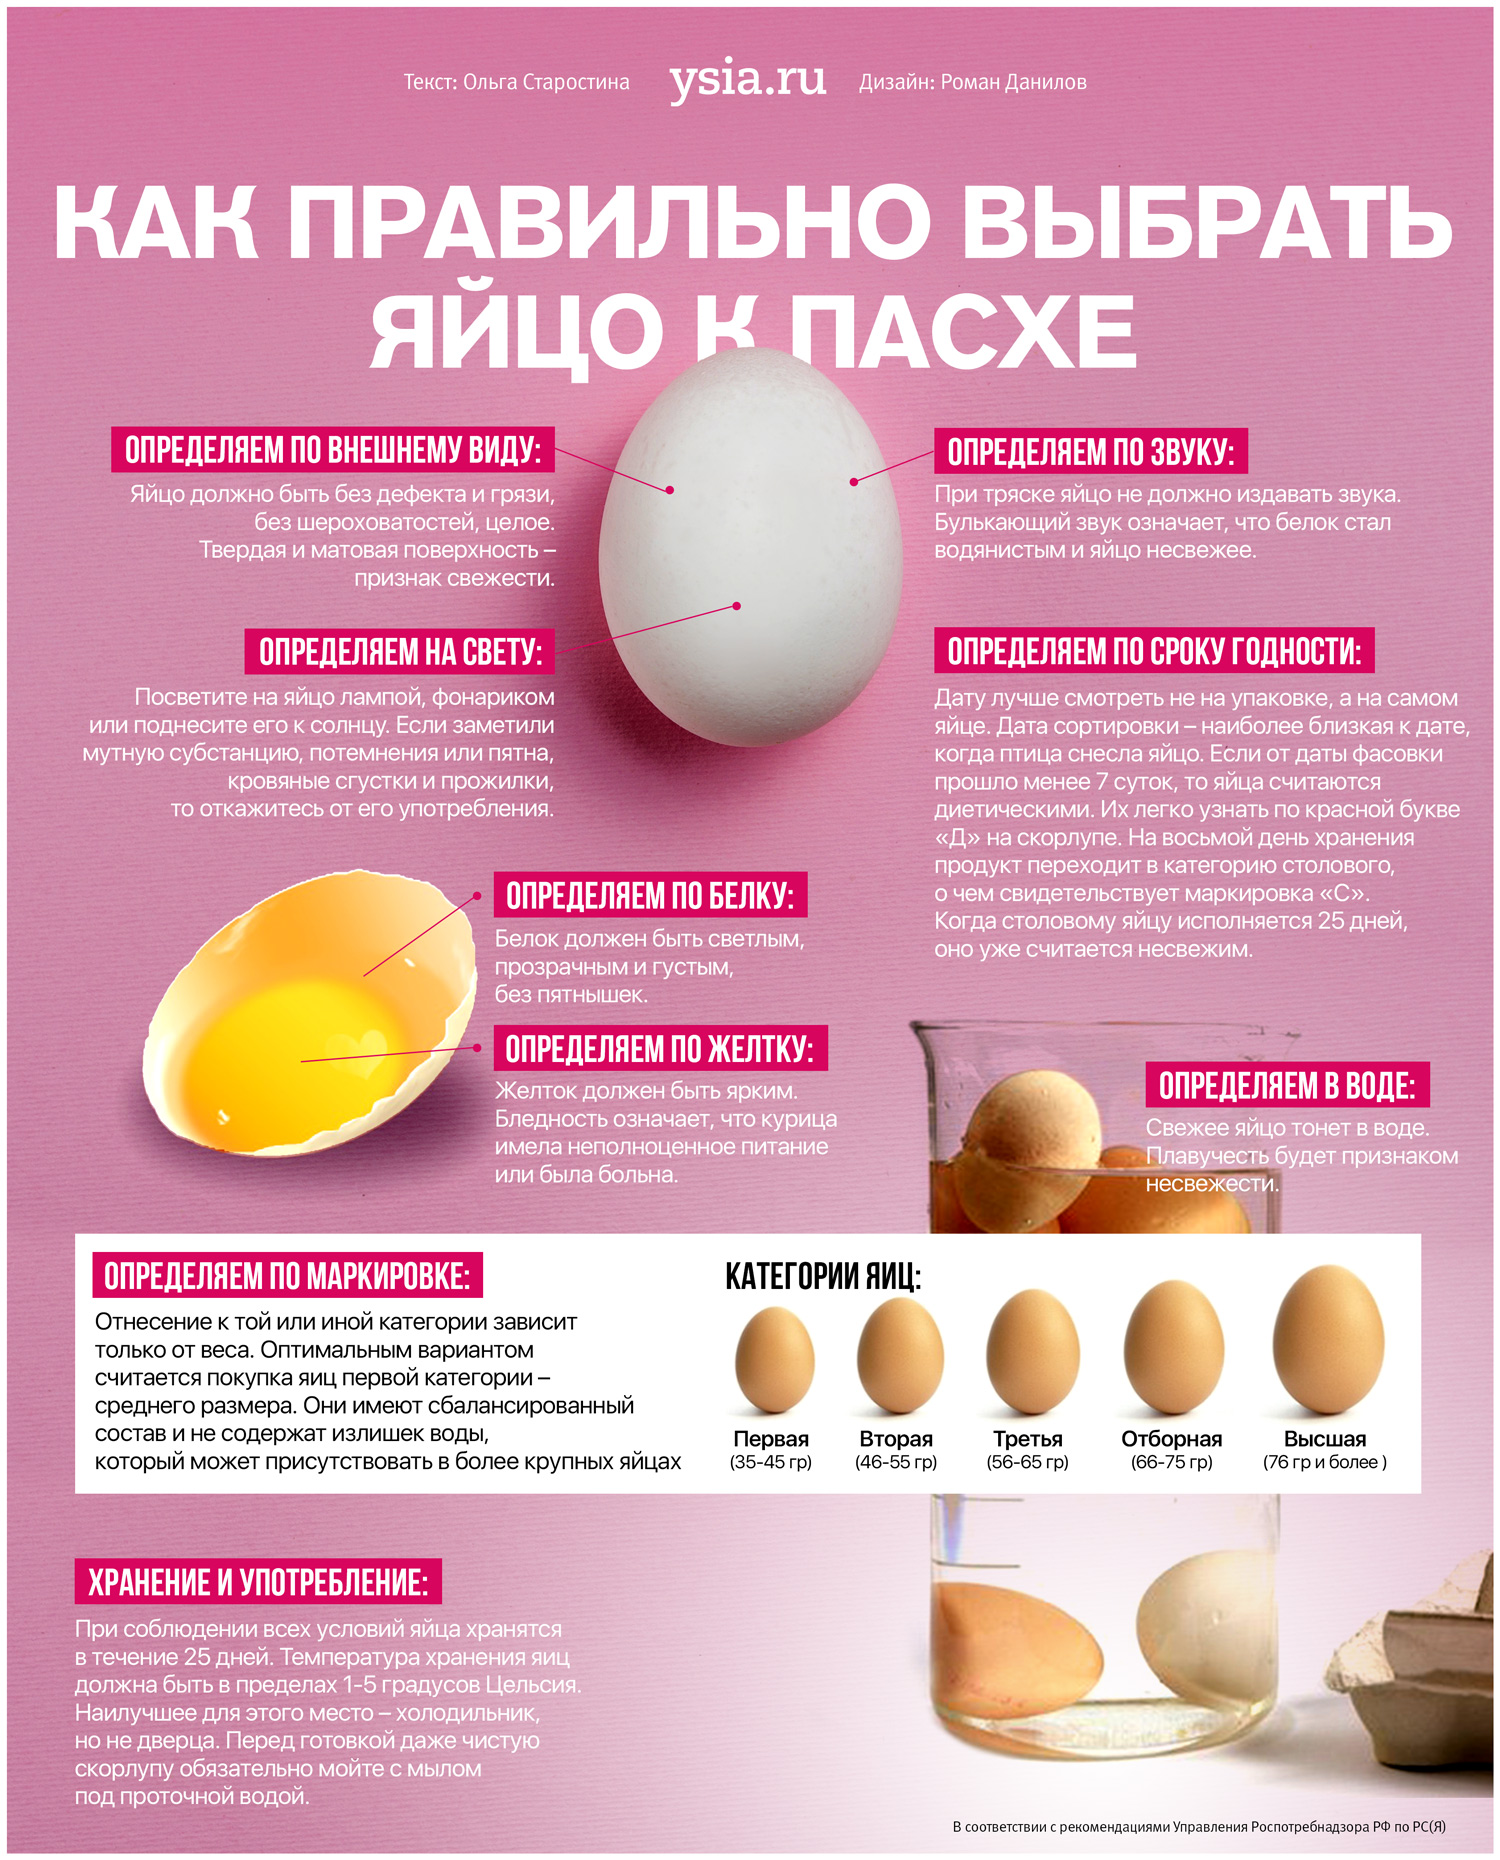 Какие яйца лучше купить. Как выбрать яйца. Как правильно выбирать яйца. Инфографика яйцо. Категории яиц куриных.